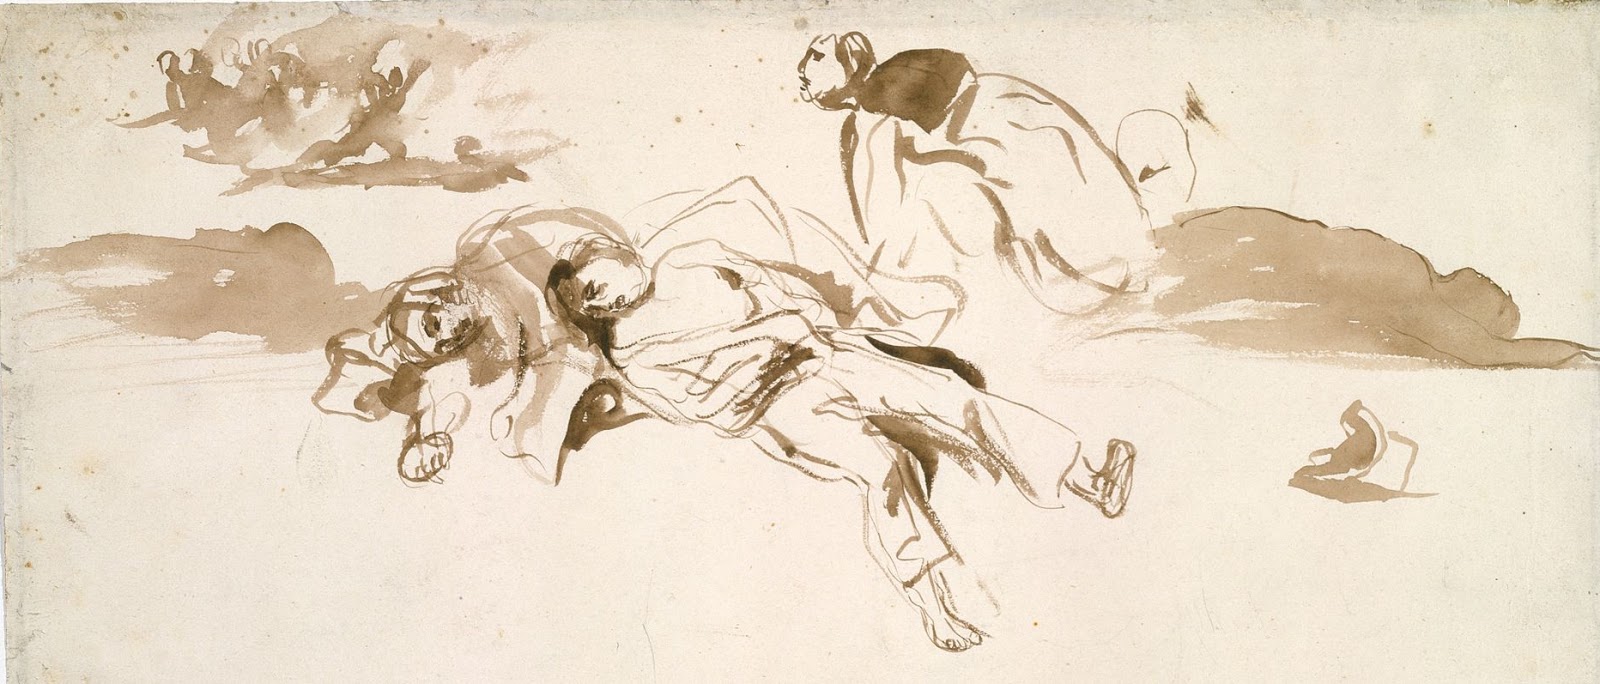 Eugene+Delacroix-1798-1863 (163).jpg